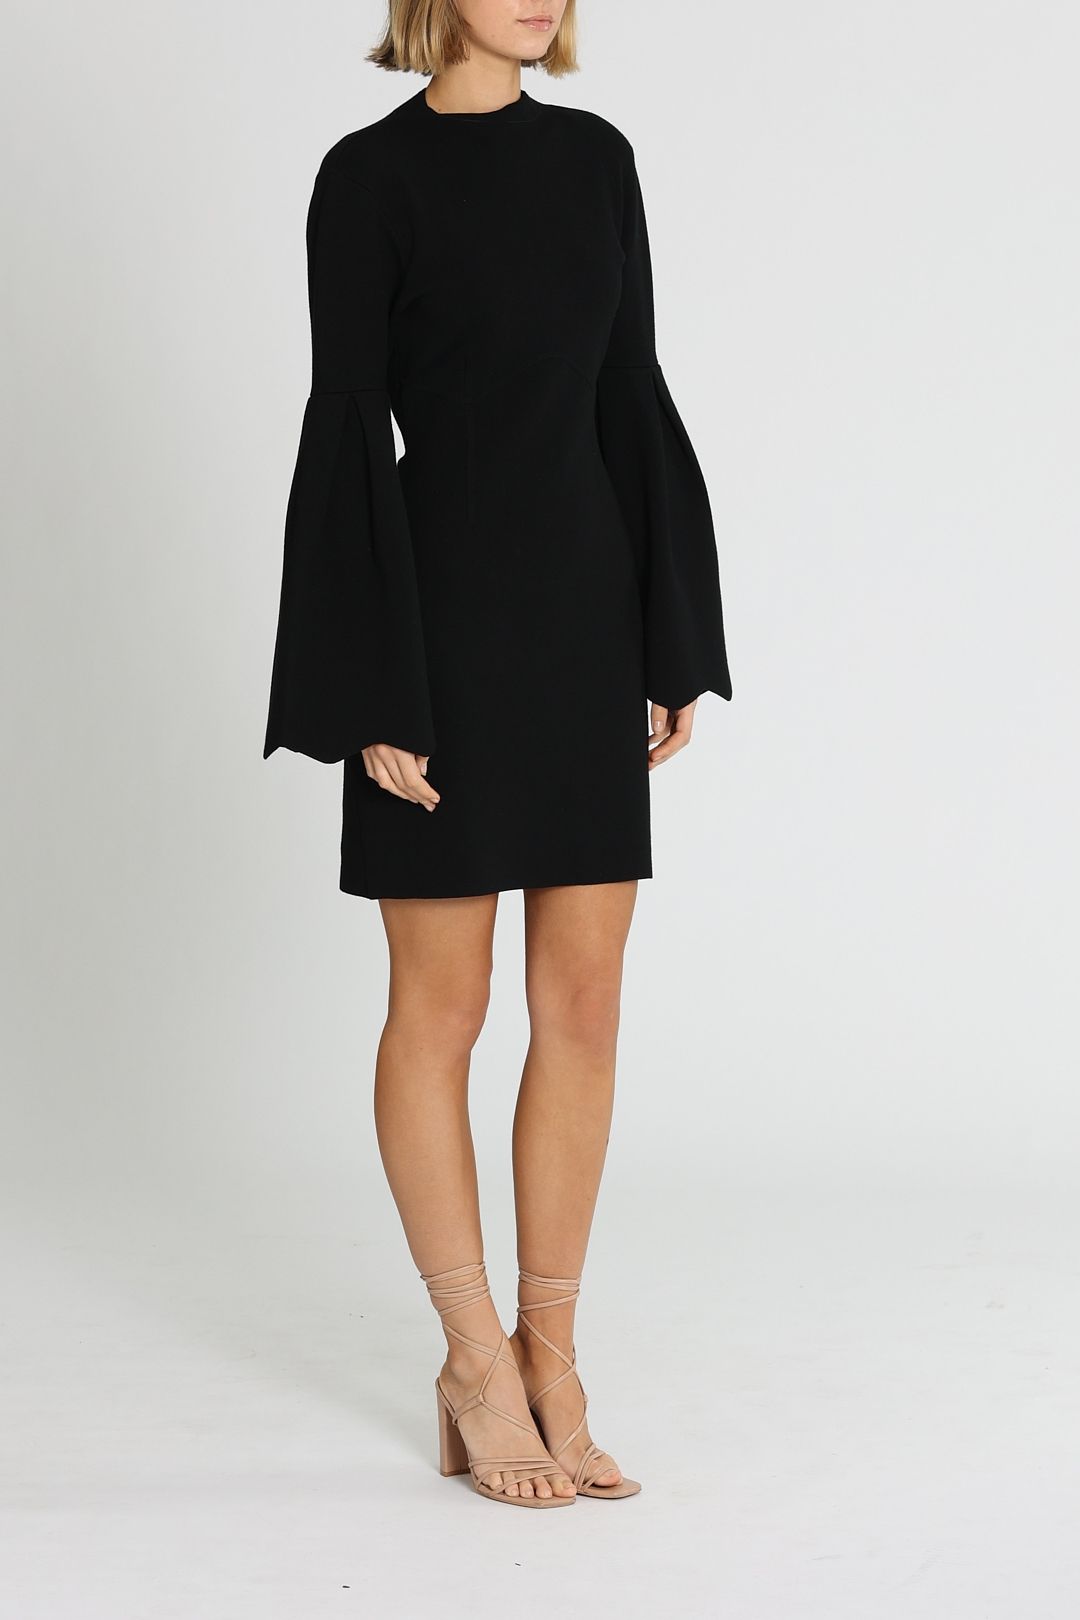 Clea Ebony Knit Dress Black Mini